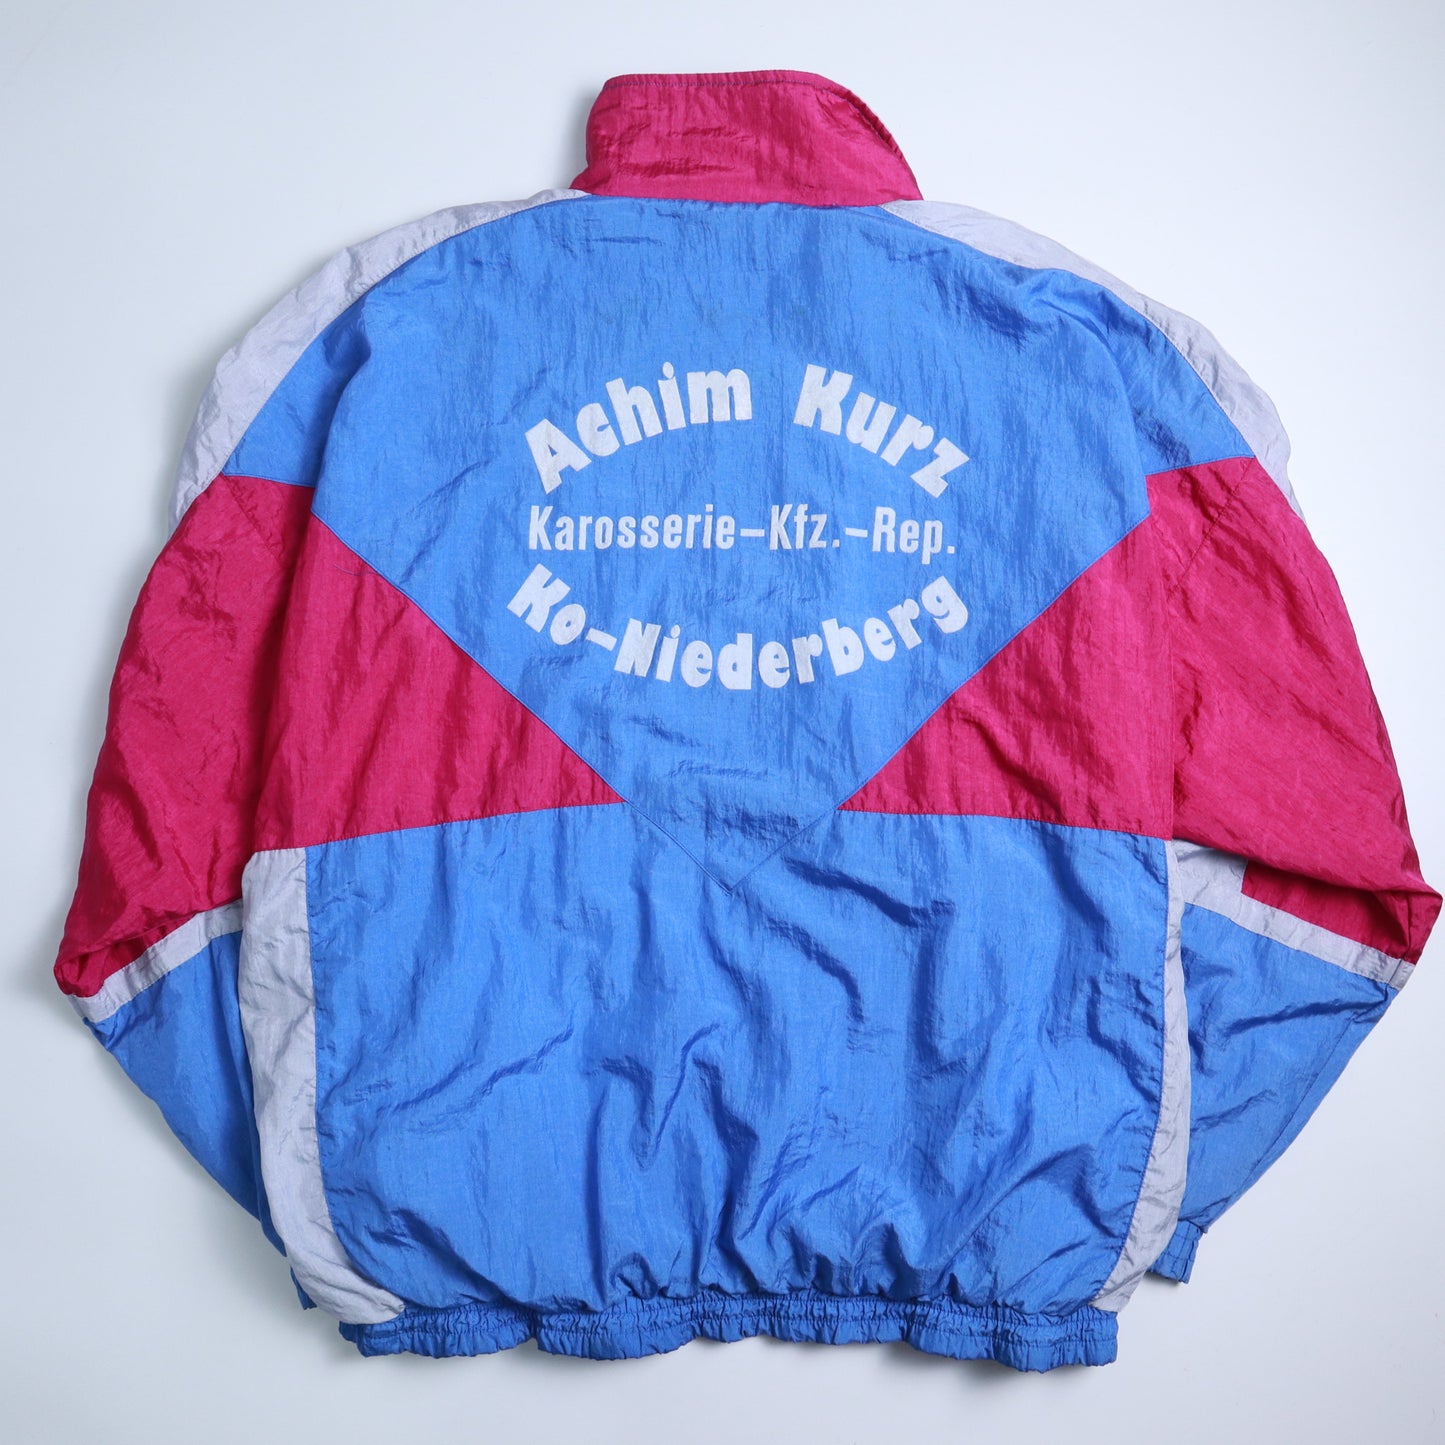 90's クレイジーナイロンジャケット ブルーとピンクのコントラストナイロンジャケット 防風ジャケット